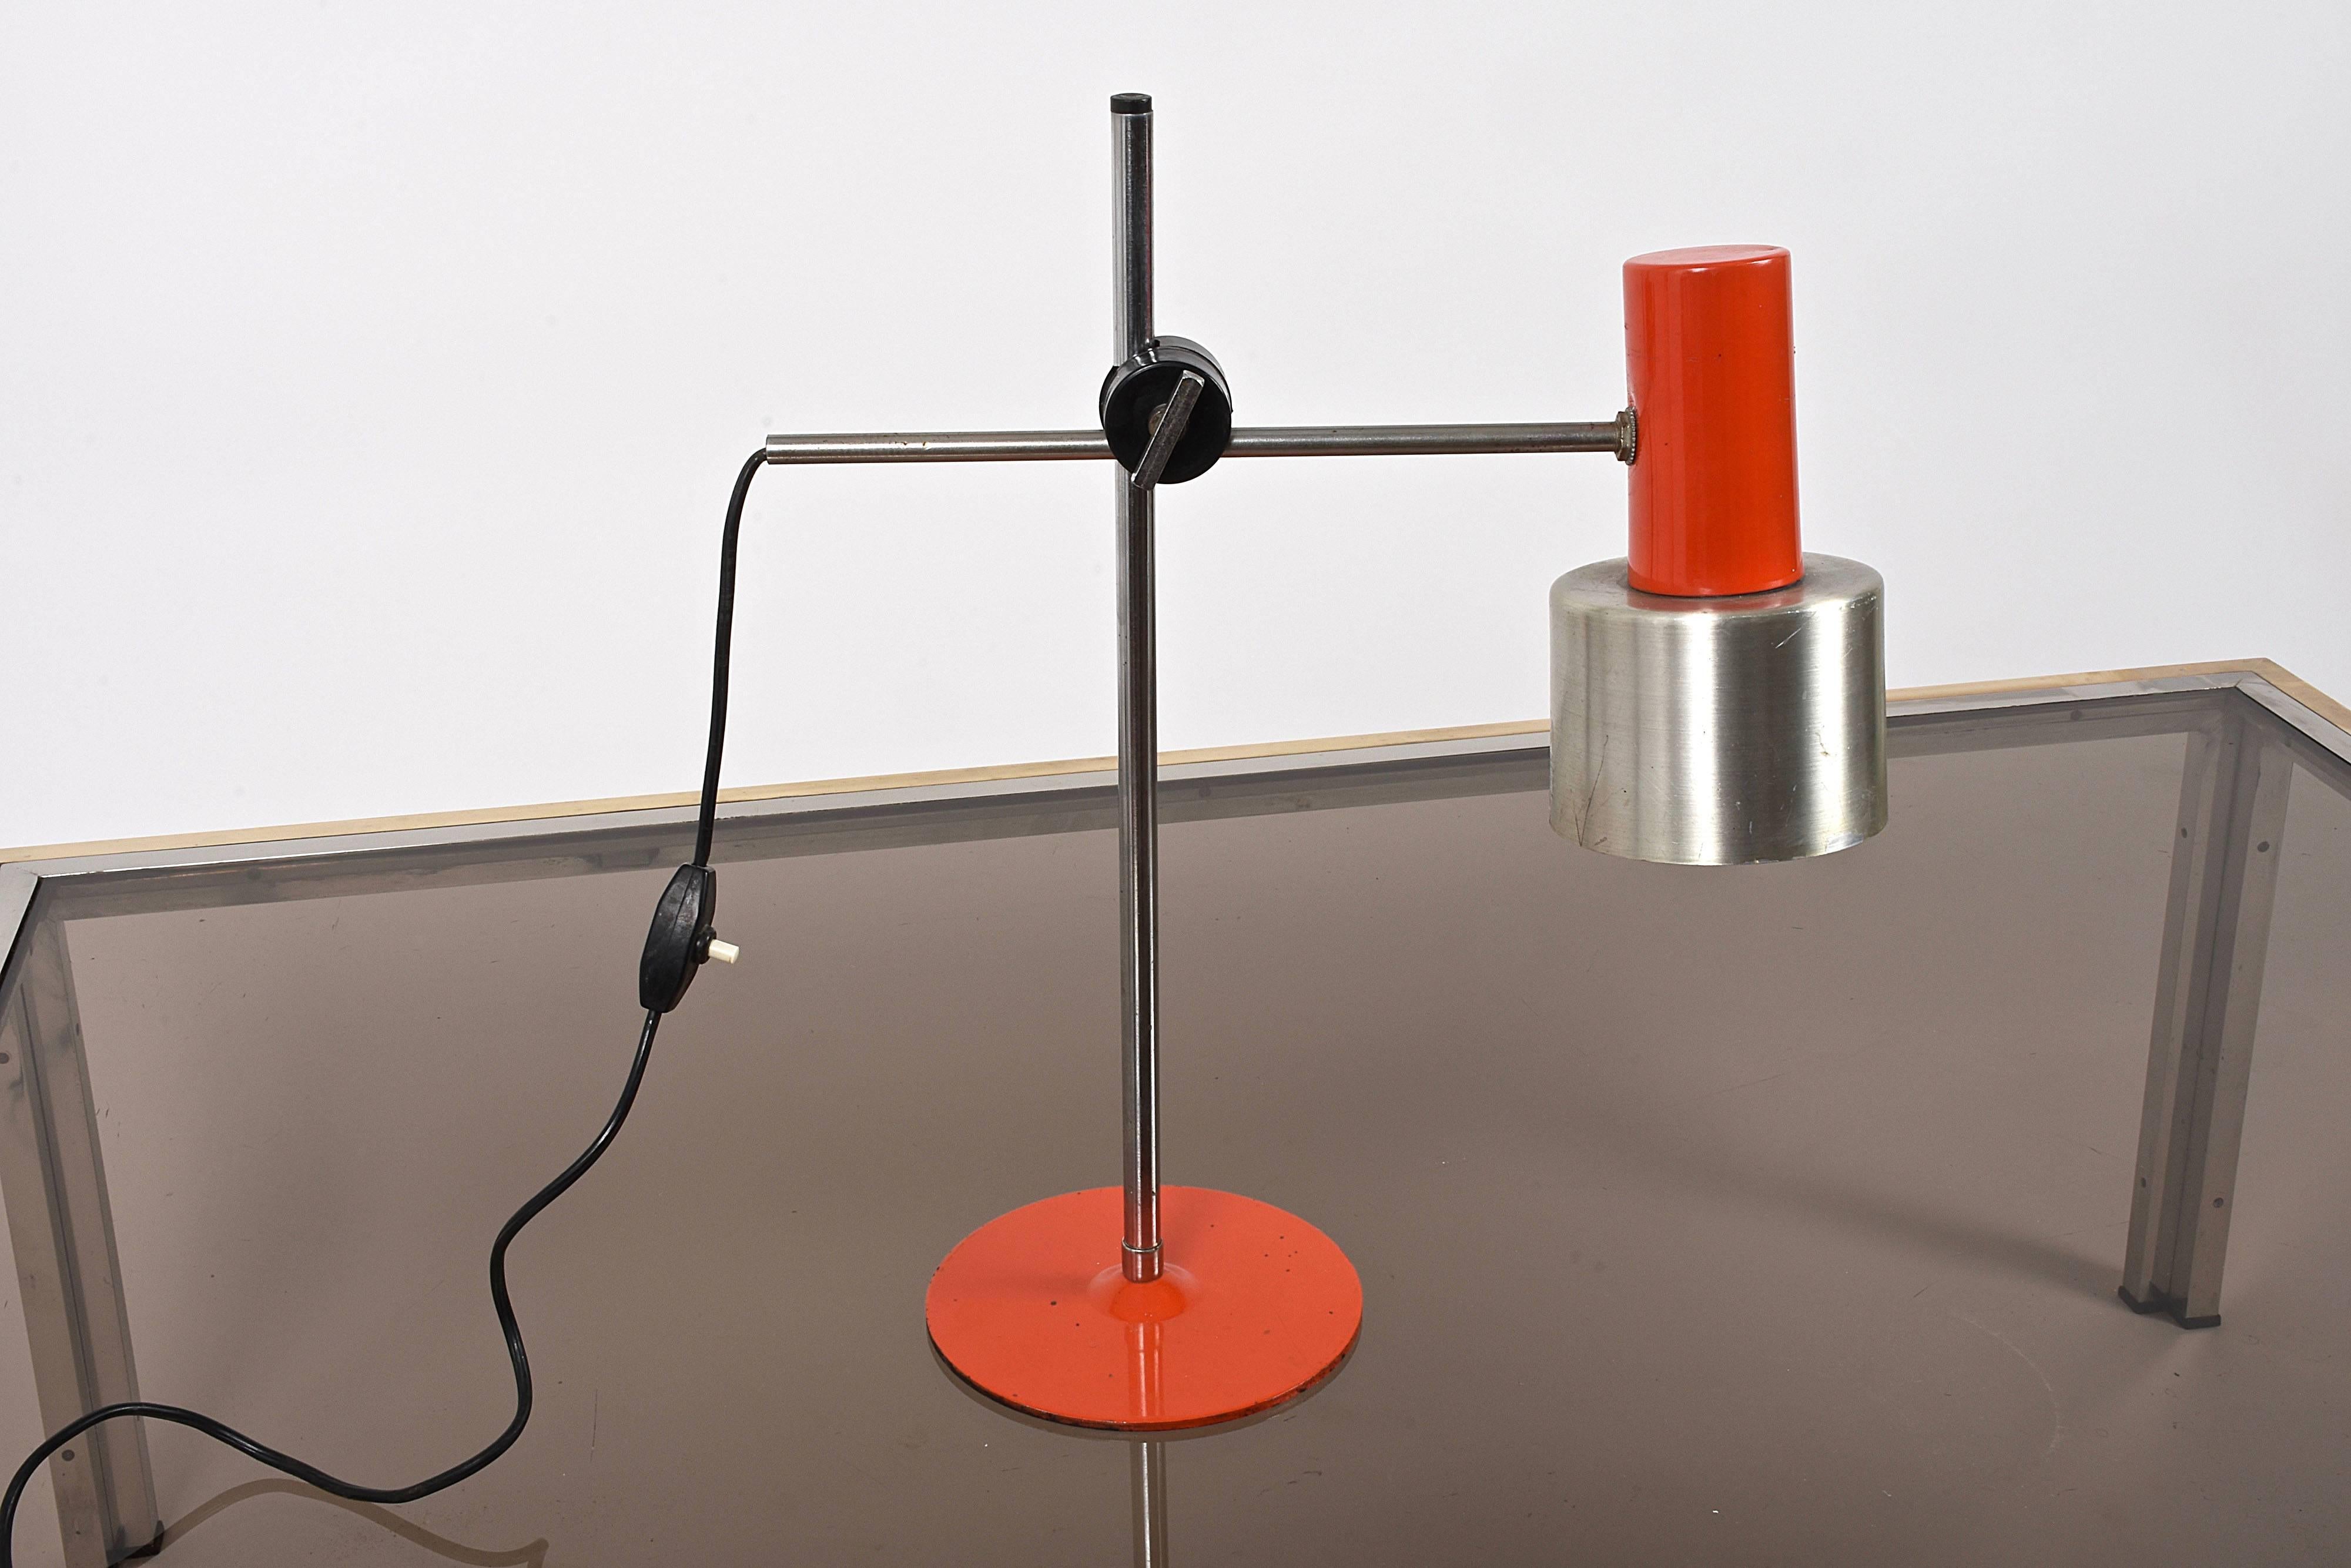 Amazing midcentury orange metal and aluminium adjustable table lamp. Ce merveilleux article a été produit en Italie dans les années 1960 pour Stilnovo.

Cette pièce fantastique présente des lignes uniques et très élégantes et une étonnante